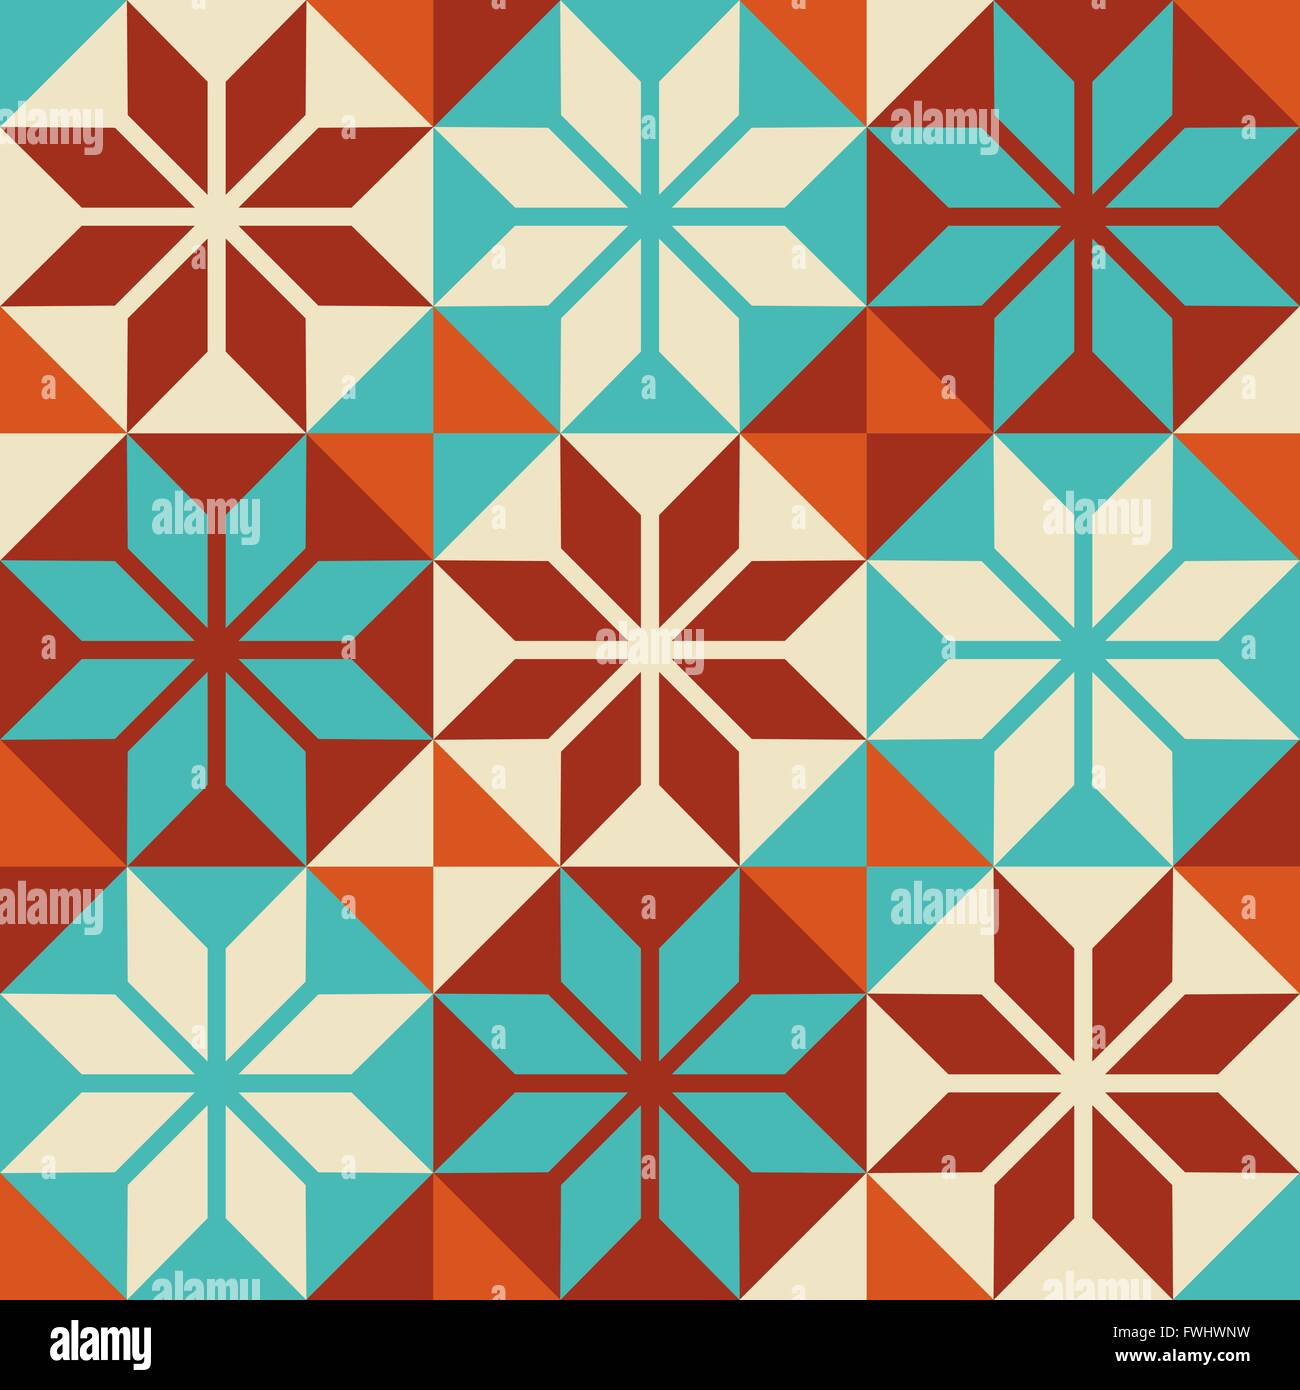 Vintage-Stil dekorative Mosaik nahtlose Kachelmuster mit farbenfrohen abstrakten geometrischen Formen. EPS10 Vektor. Stock Vektor